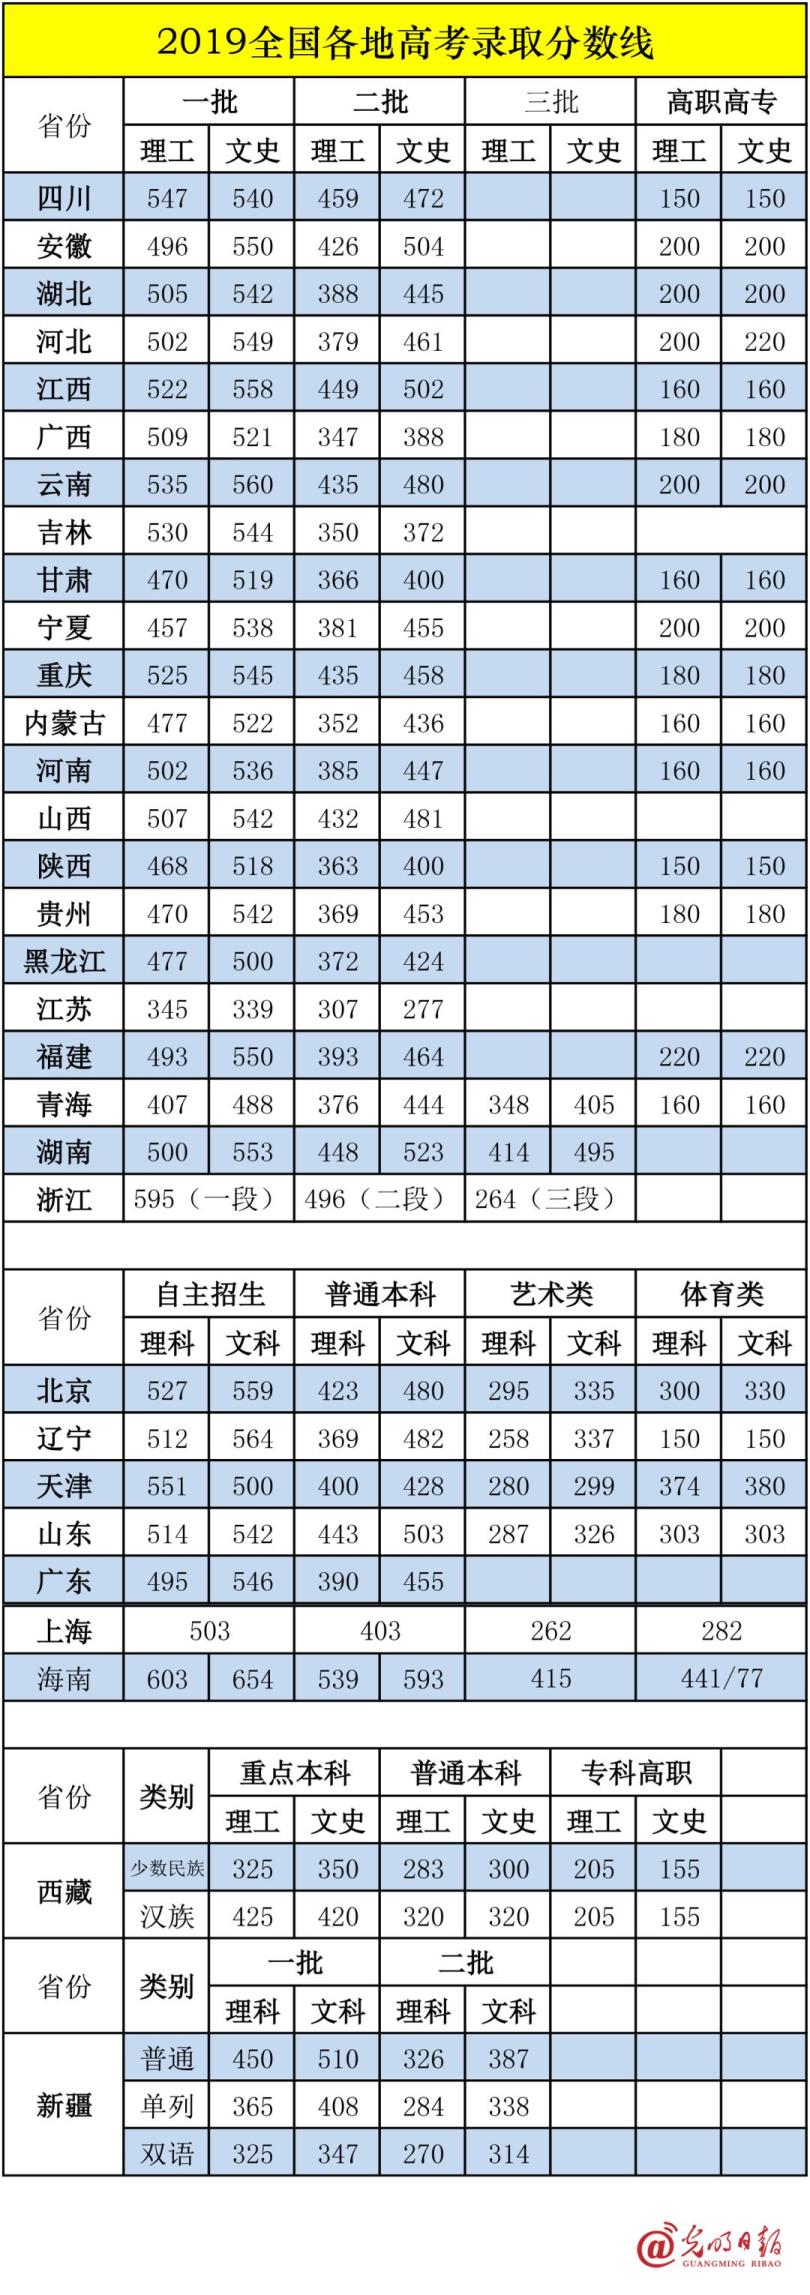 2020年高考成绩排名表贵州(2020年高考成绩排名)